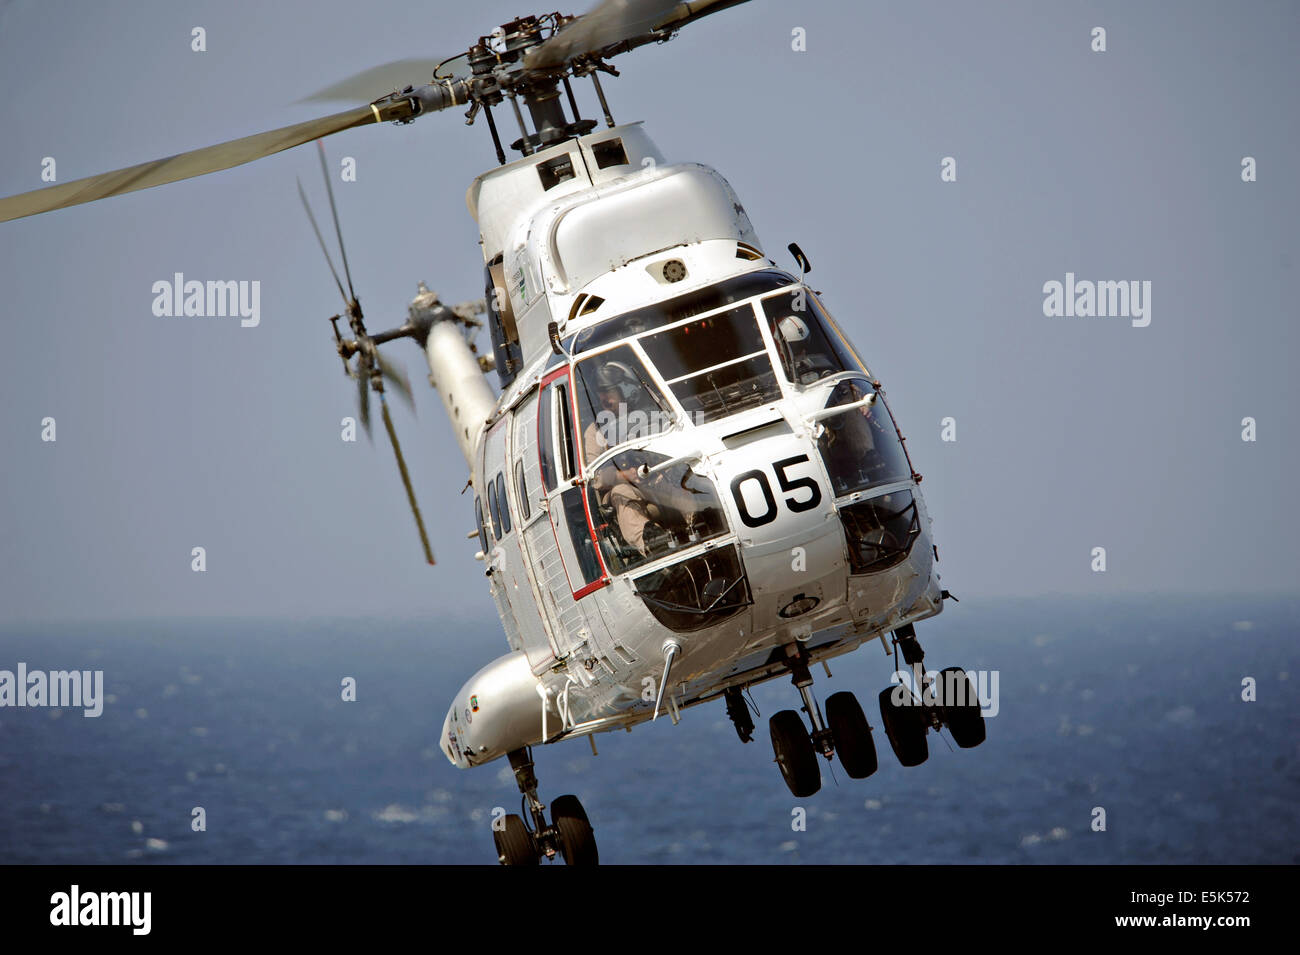 Una US Navy SA-330J helicóptero Puma ferries carga del transporte marítimo de carga seca de comandos militares y municiones buque USNS César Chávez a la cubierta de vuelo del portaaviones USS Nimitz durante una reposición en alta mar el 12 de noviembre de 2013 en el Golfo de Adén. Foto de stock